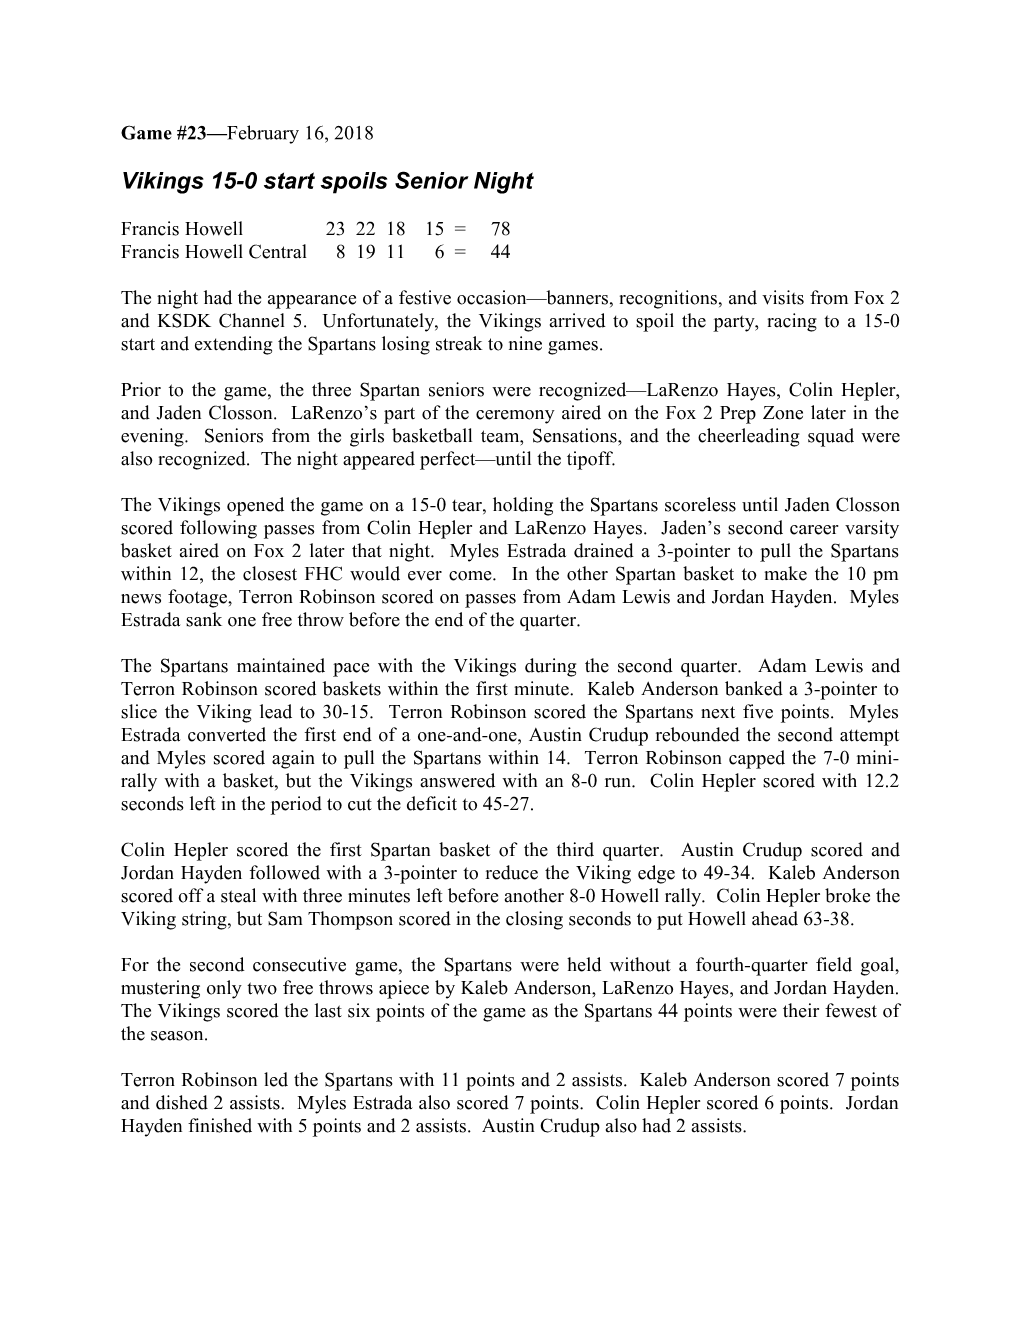 Vikings 15-0 Start Spoils Senior Night